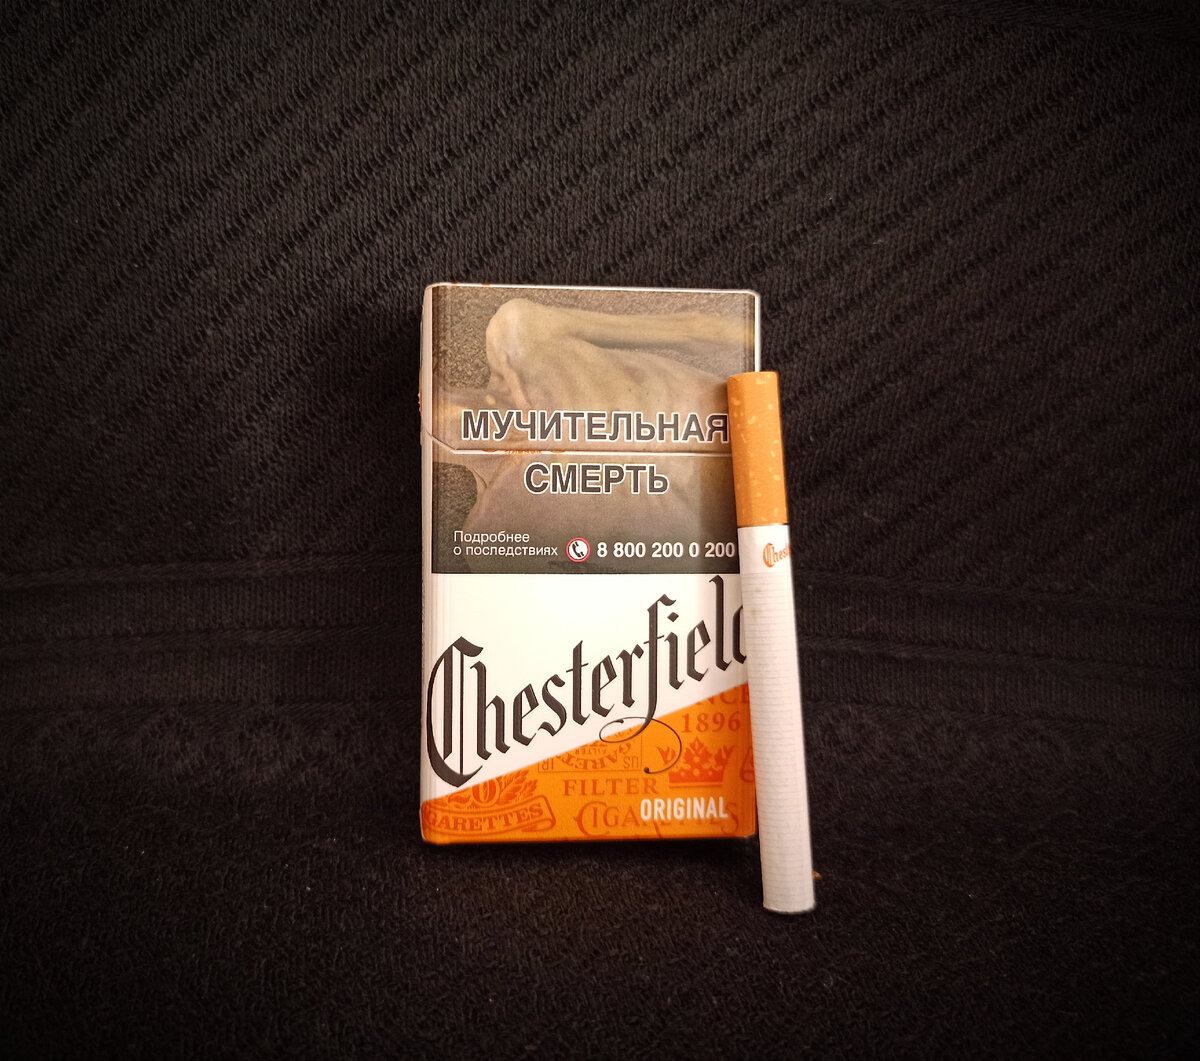 Честерфилд браун сигареты. Сигареты Честерфилд Original. Chesterfield Original оранжевый. Сигареты Честерфилд оригинал оранжевый. Сигареты Честерфилд Селекшн компакт.